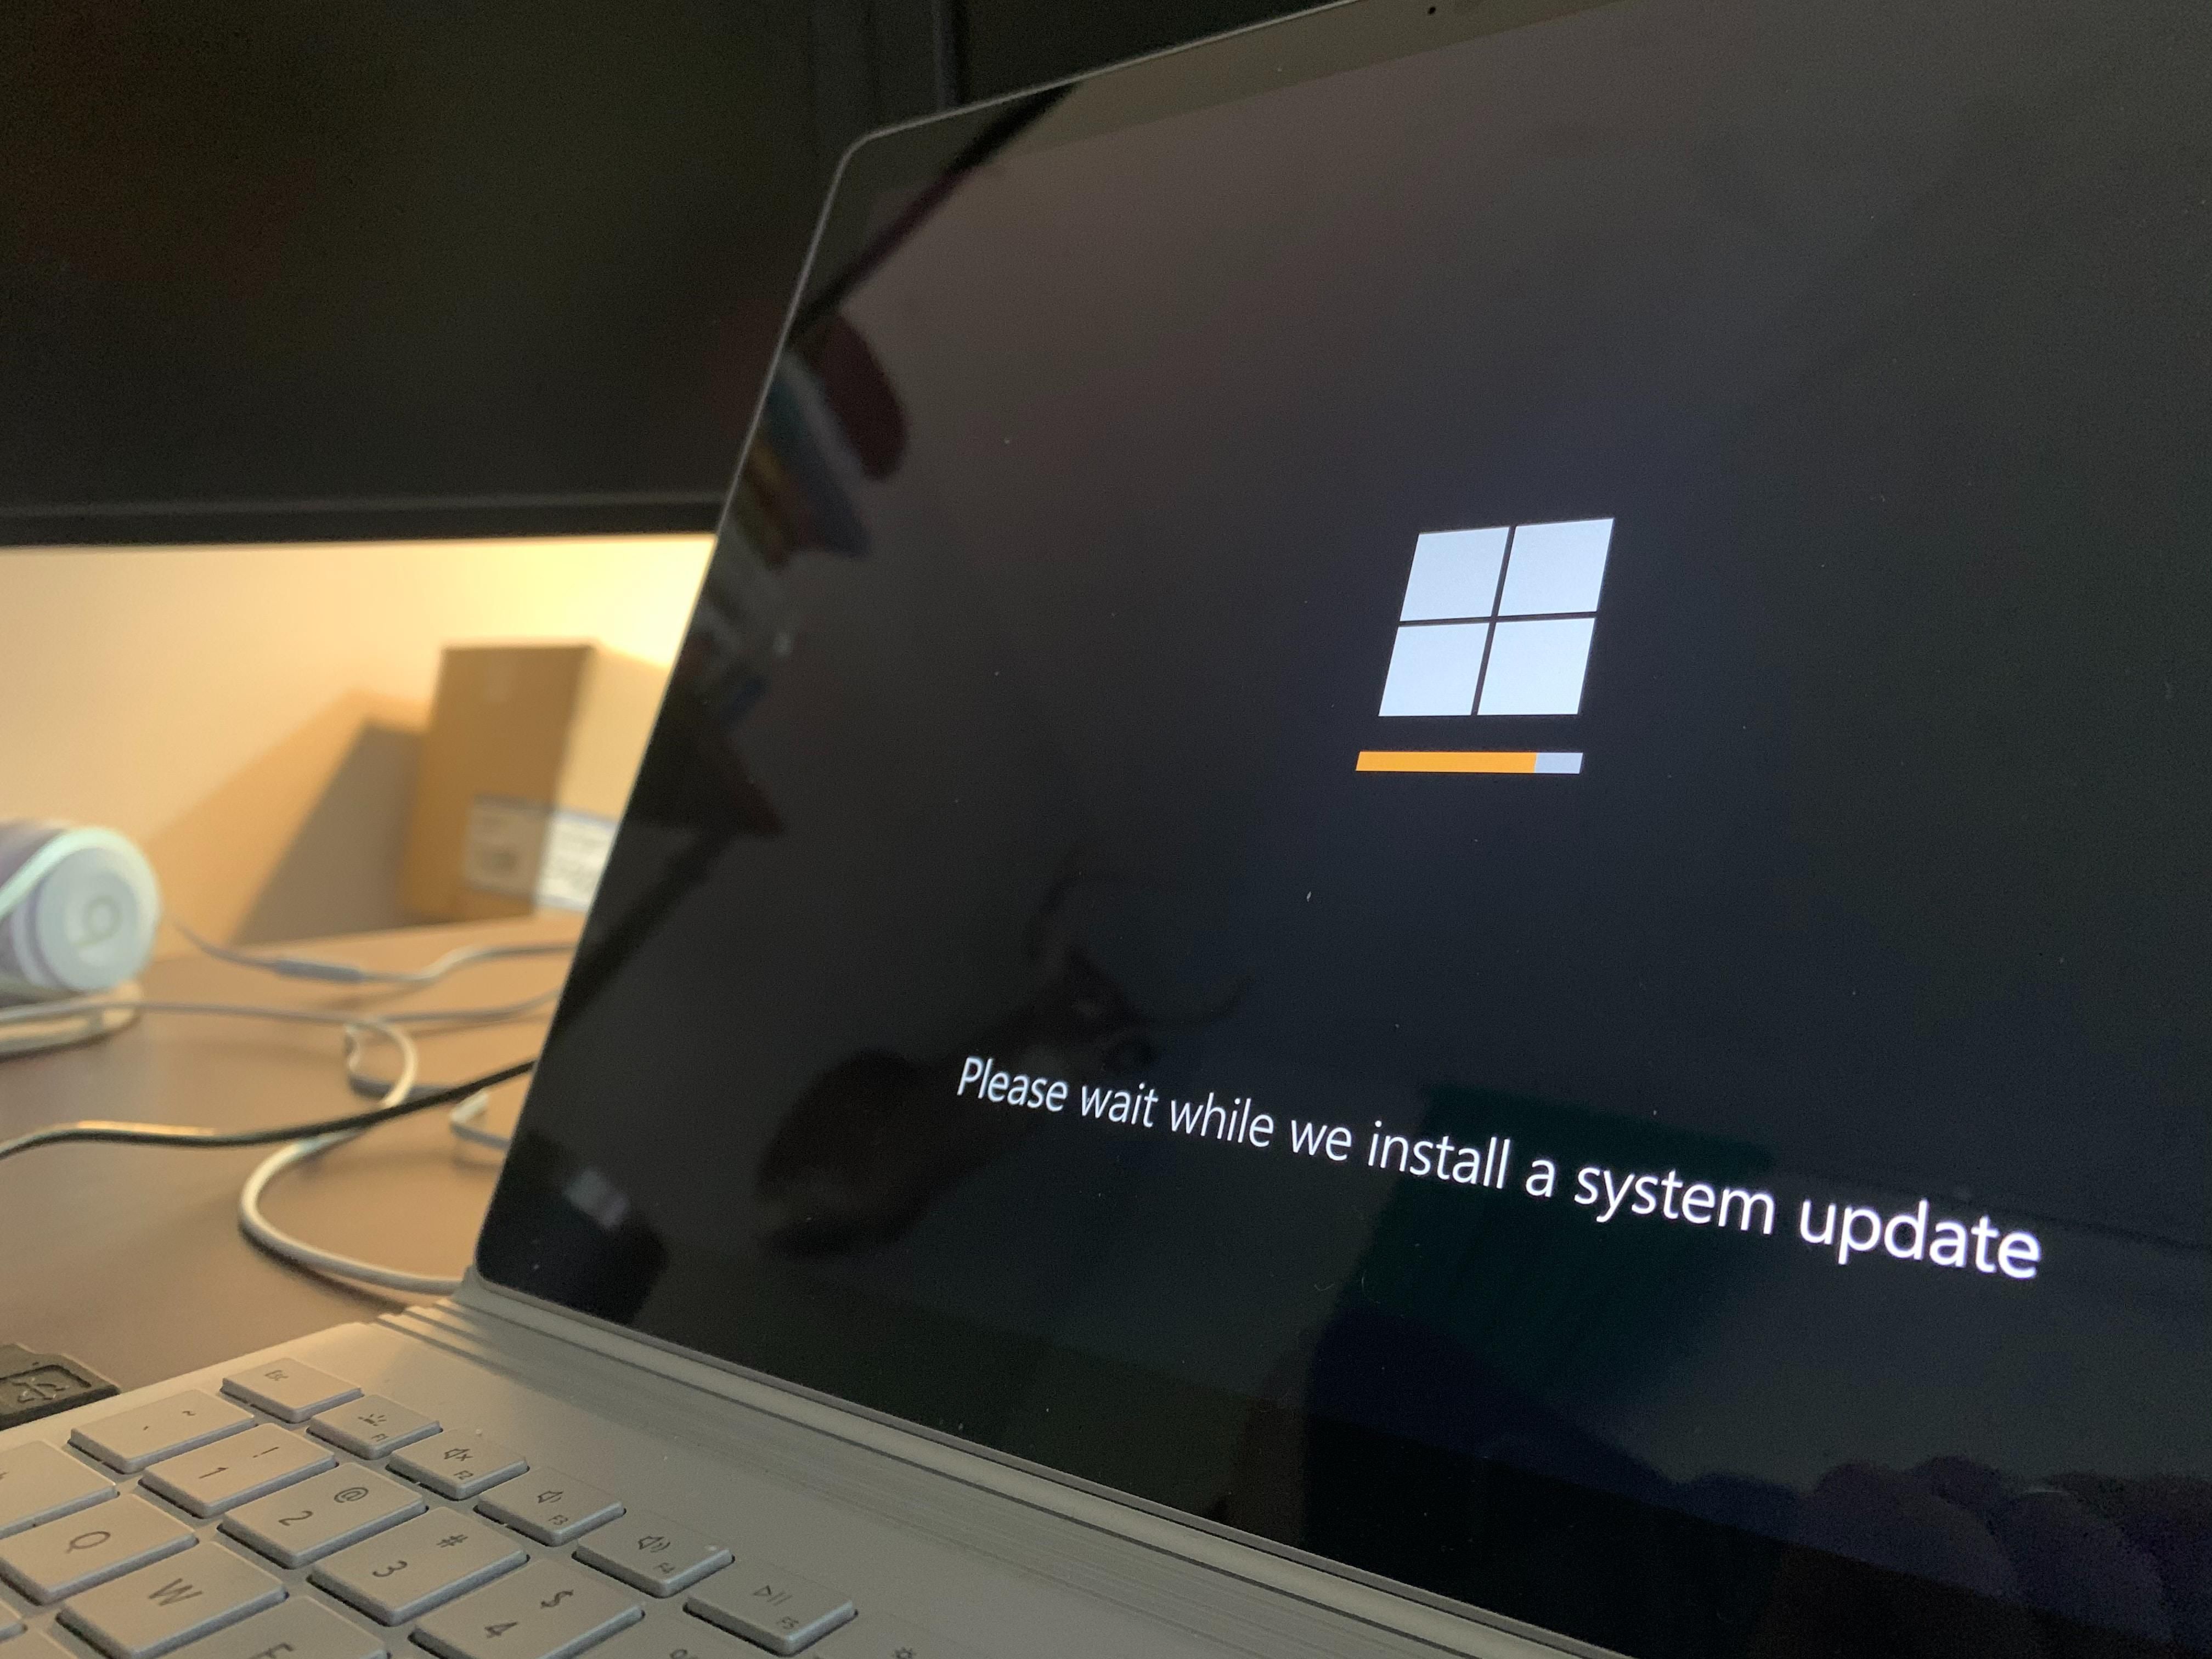 A Microsoft Windows épp frissítéseket telepít egy laptopon, ami egy asztalon van 